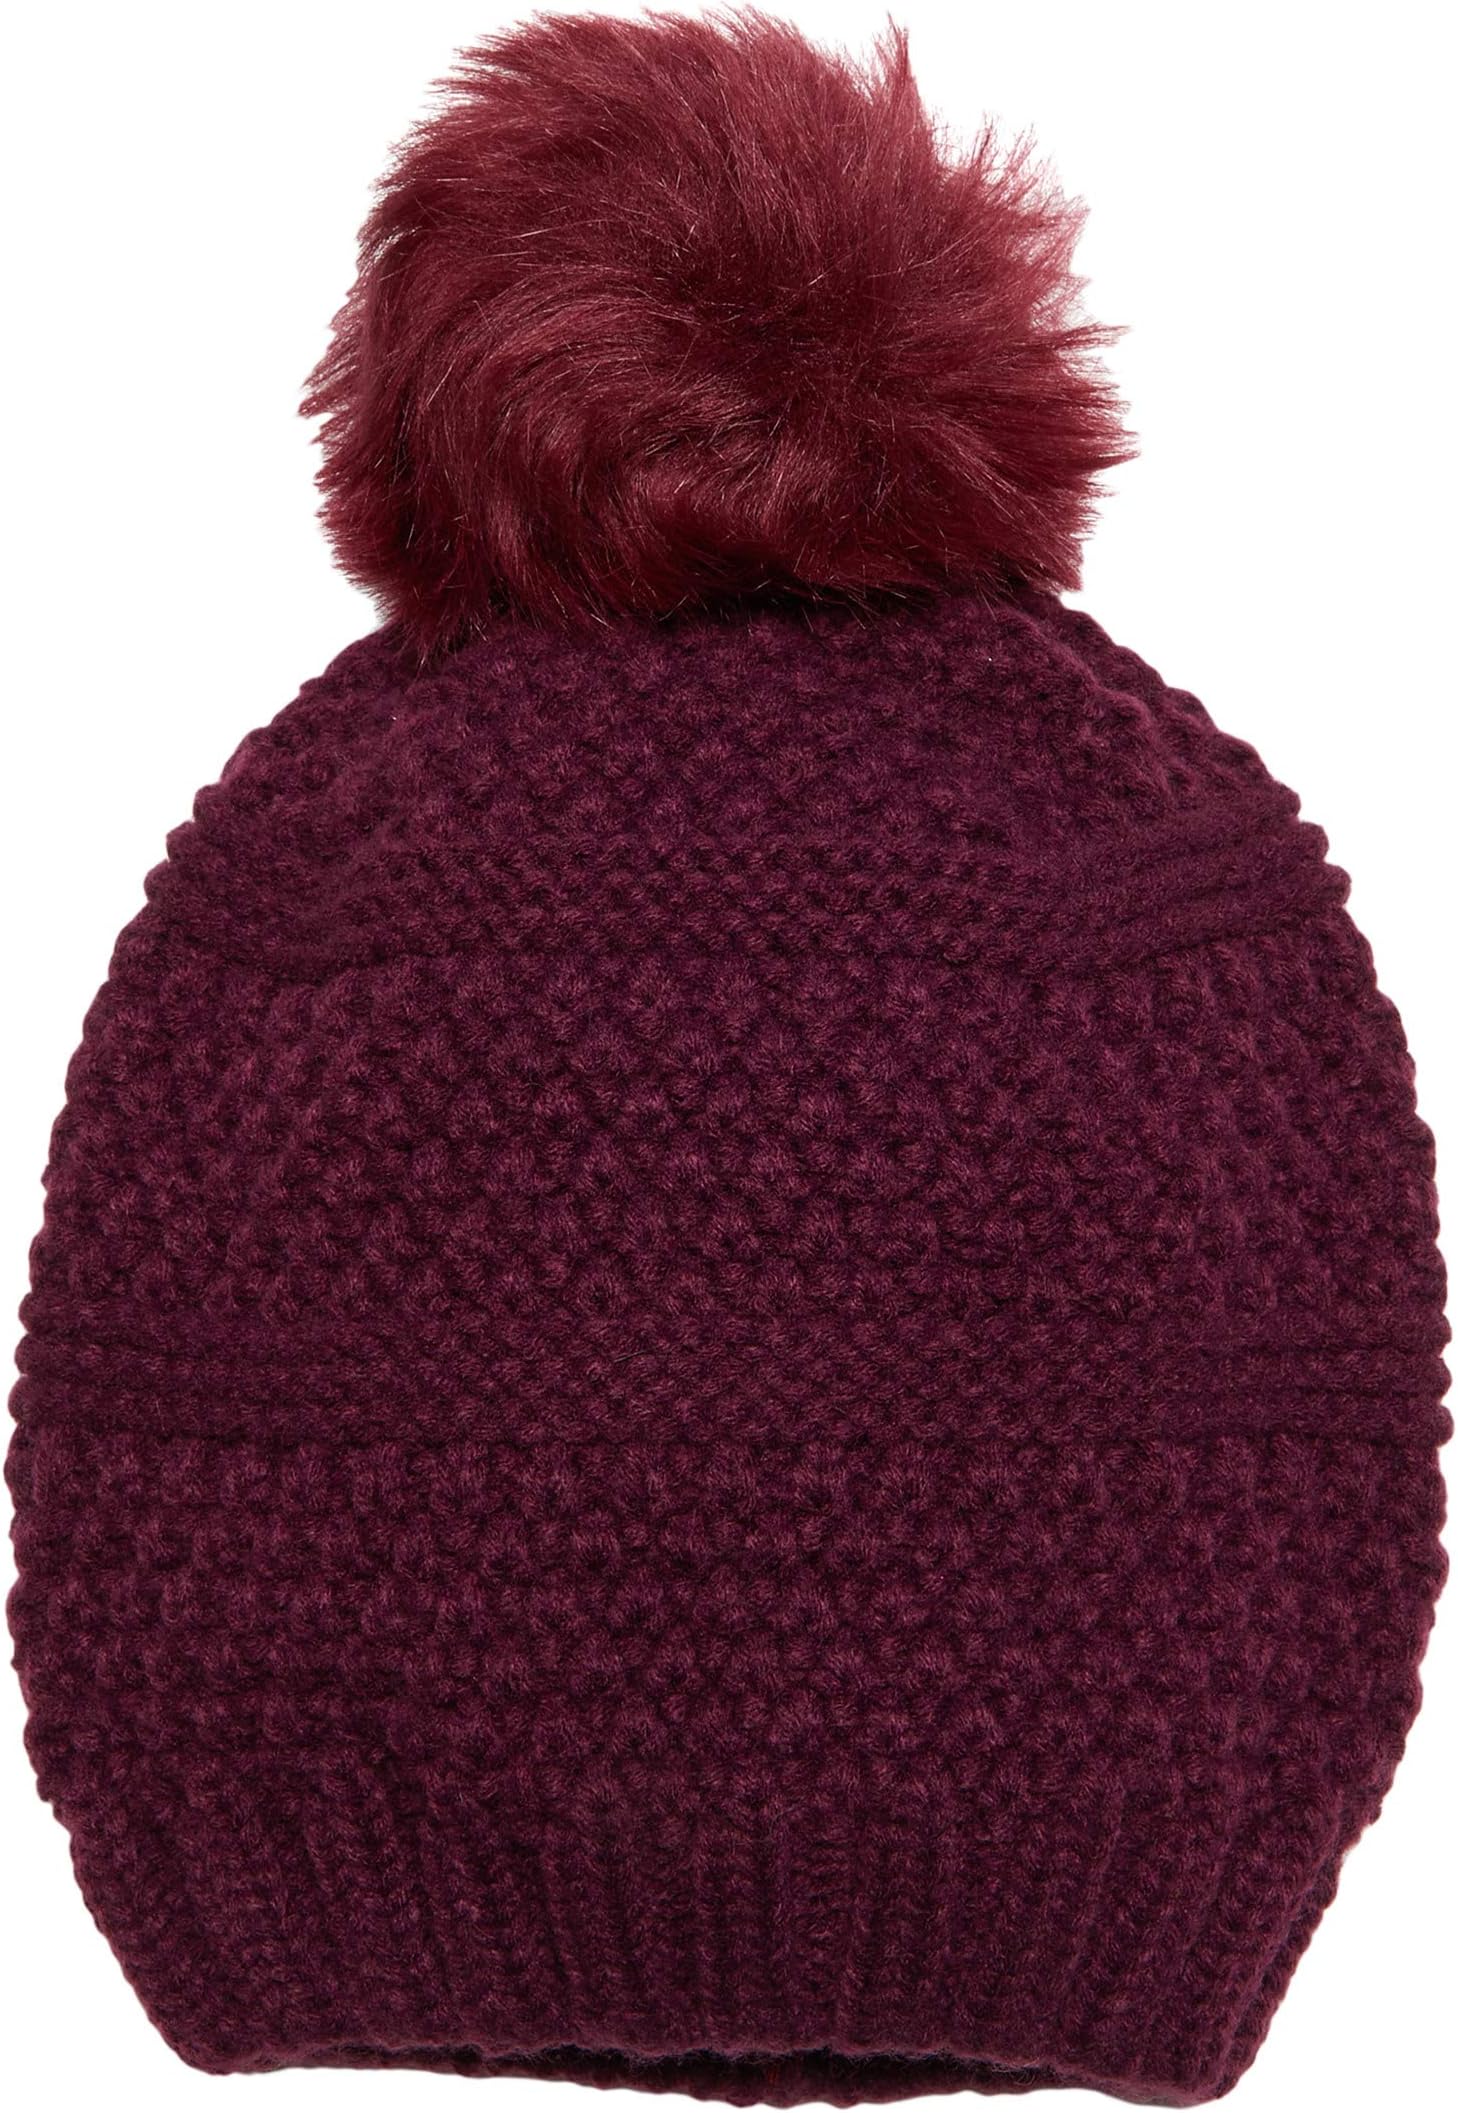 Вязаная шапка с помпоном из искусственного меха San Diego Hat Company, цвет Burgundy шапка флисовая skully elastic fleece hat burgundy